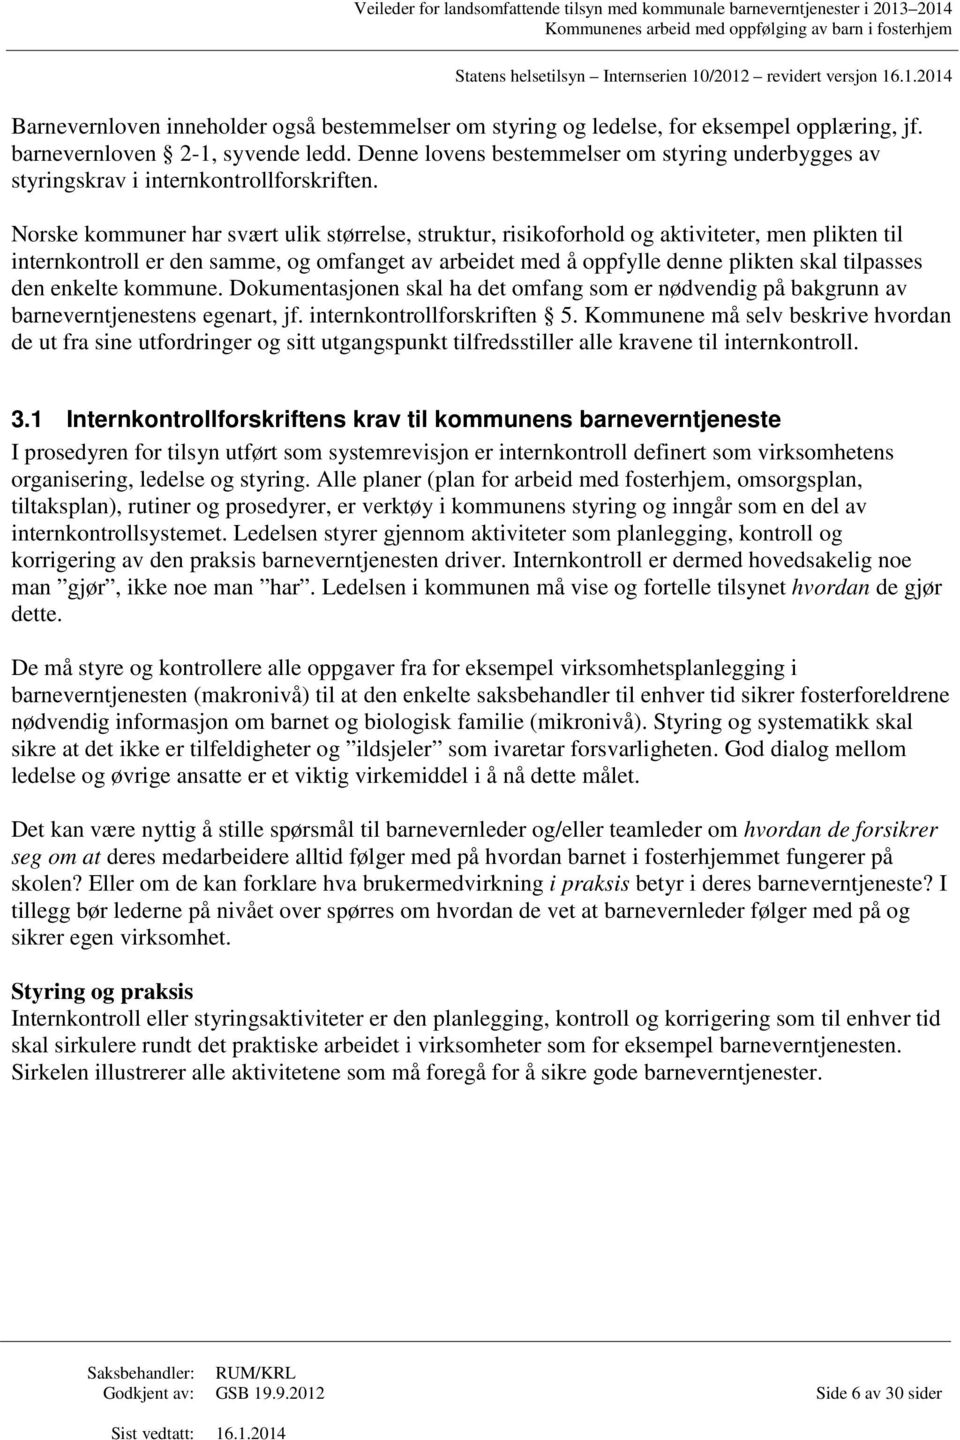 Norske kommuner har svært ulik størrelse, struktur, risikoforhold og aktiviteter, men plikten til internkontroll er den samme, og omfanget av arbeidet med å oppfylle denne plikten skal tilpasses den